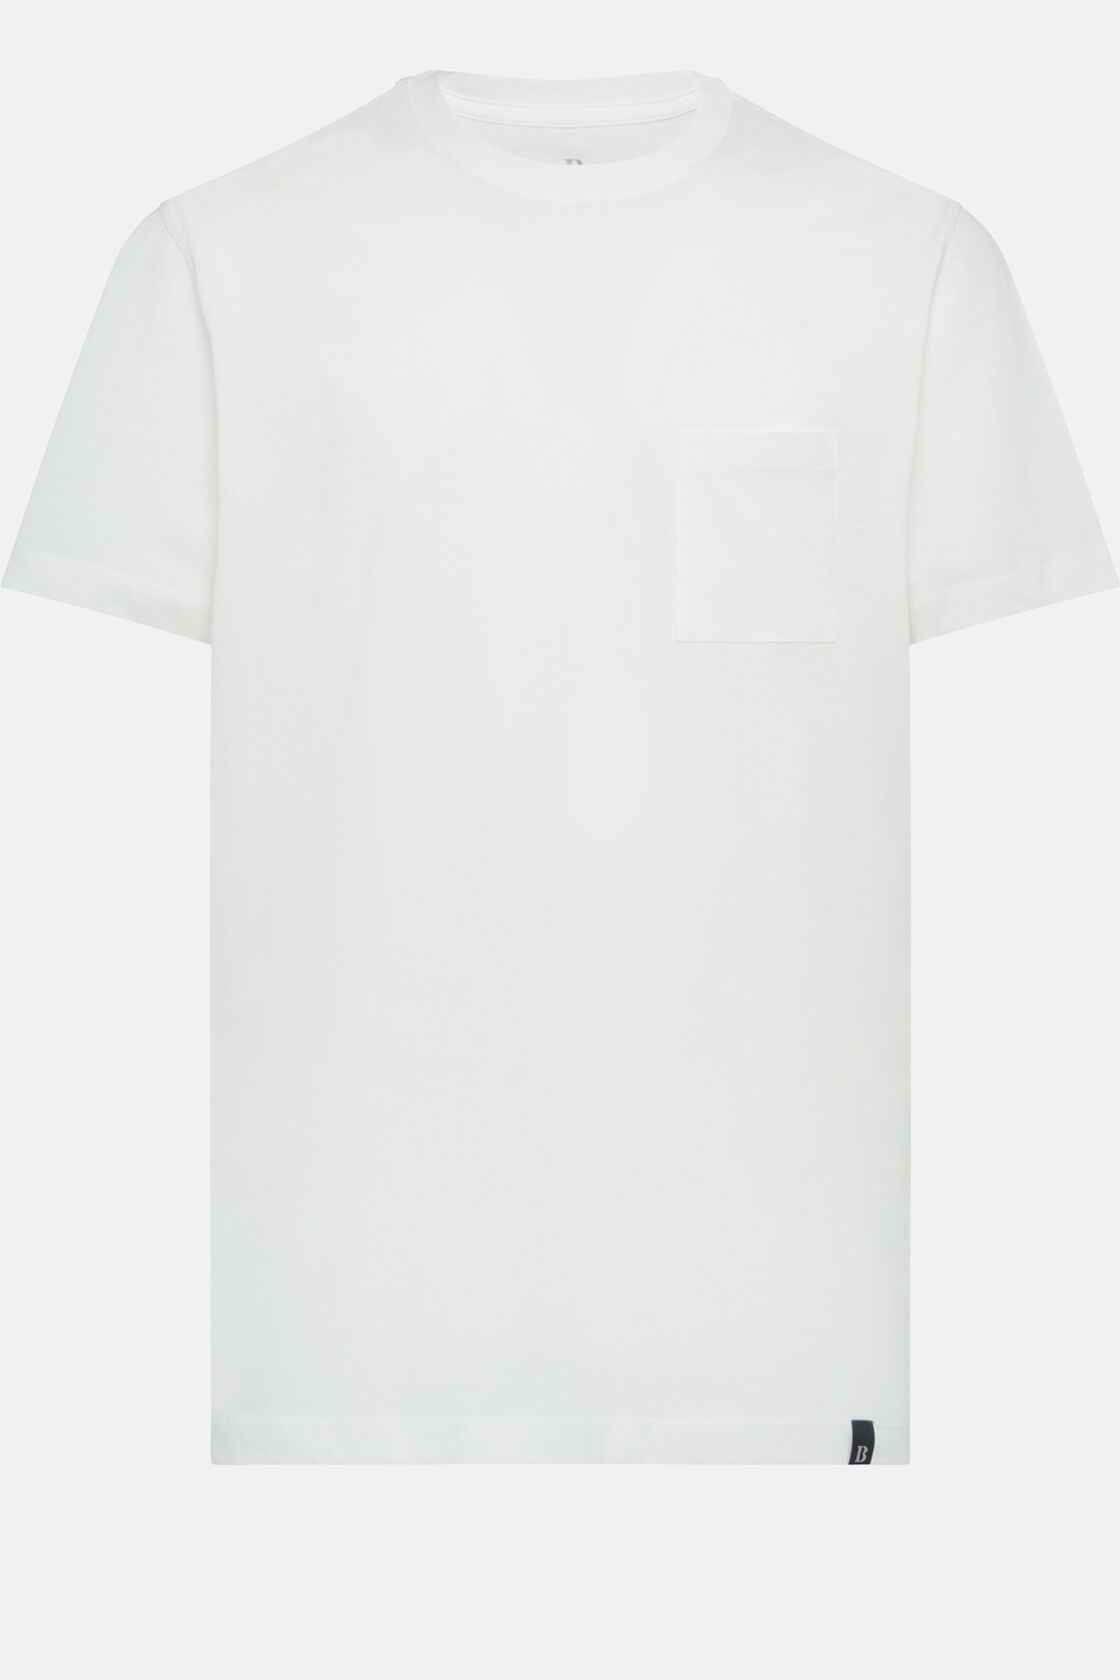 Camisetas de Algodón, Blanco, hi-res